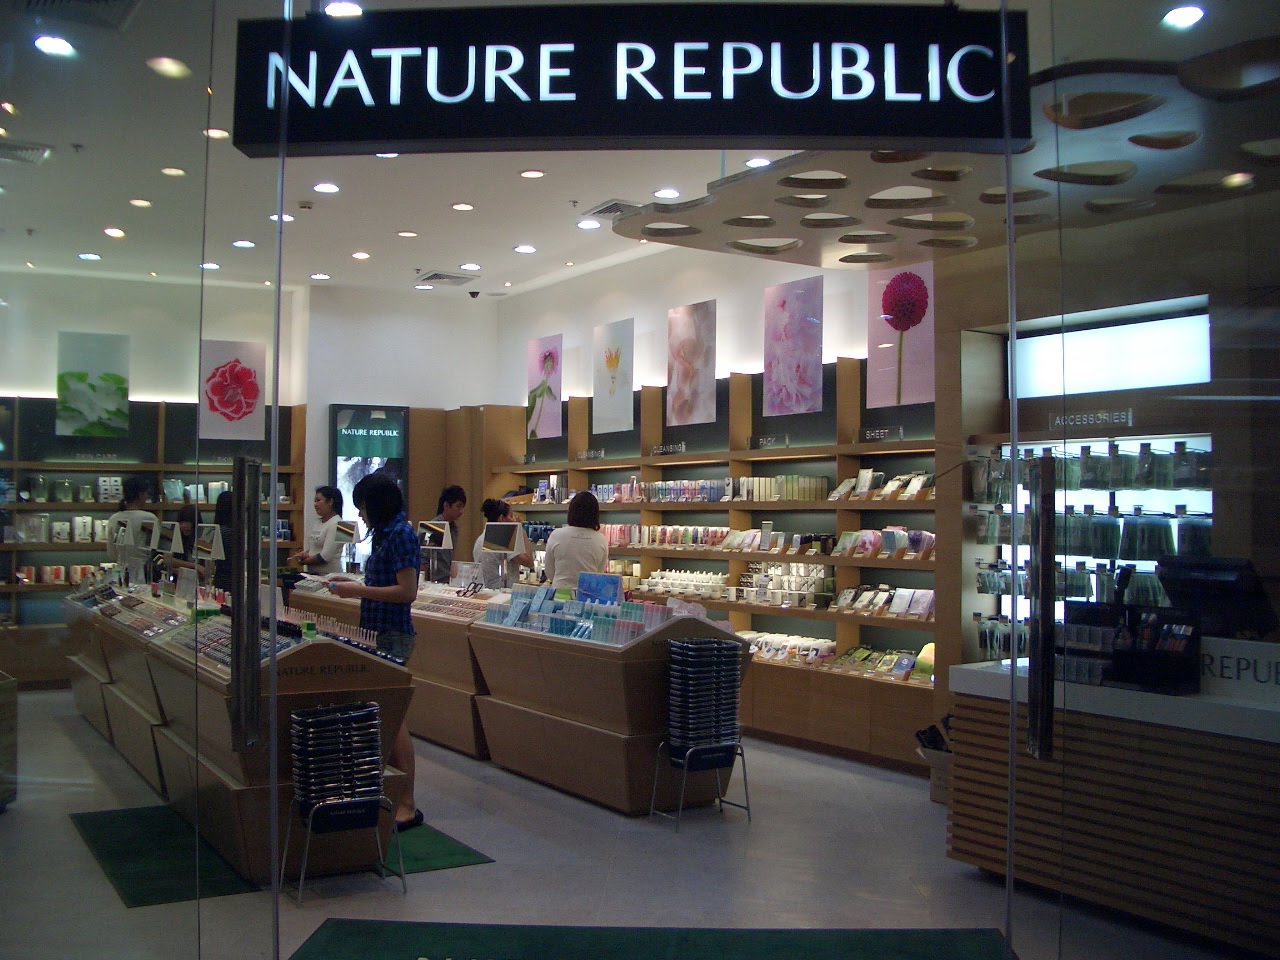 nature republic